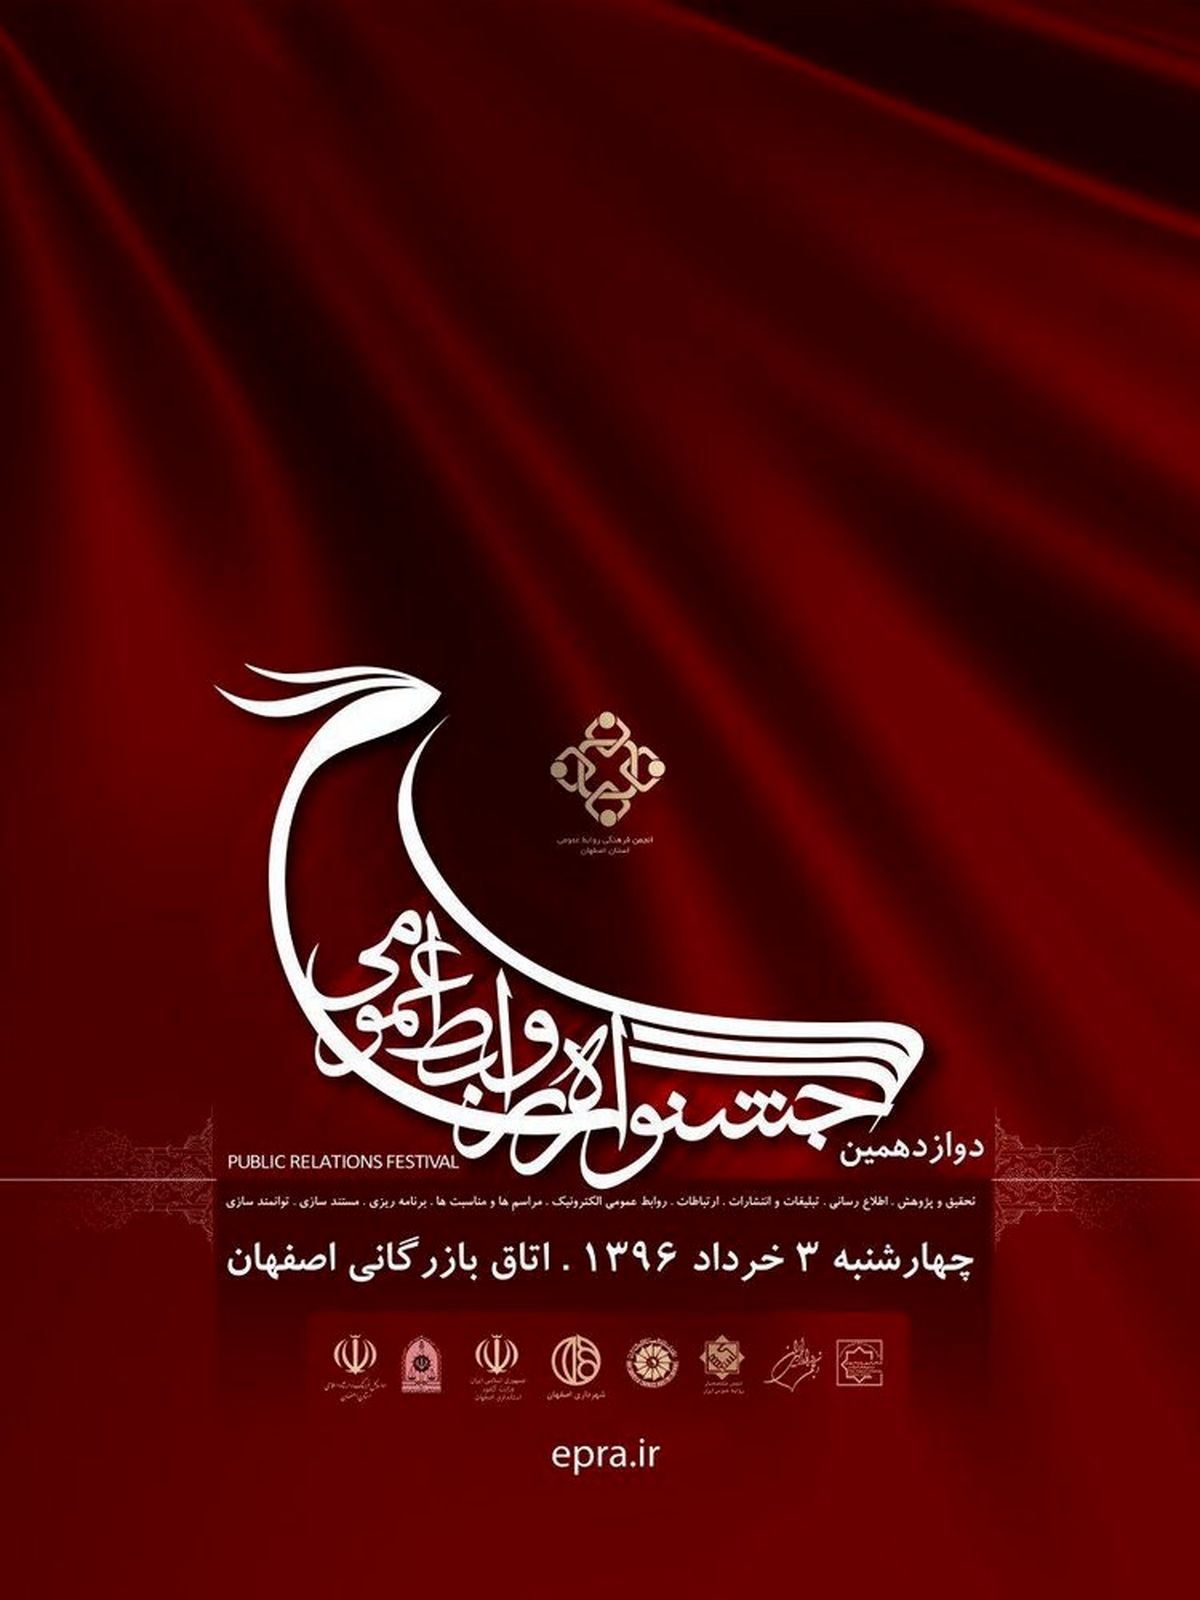 فردا ، برگزاری دوازدهمین جشنواره روابط عمومی ها در اصفهان